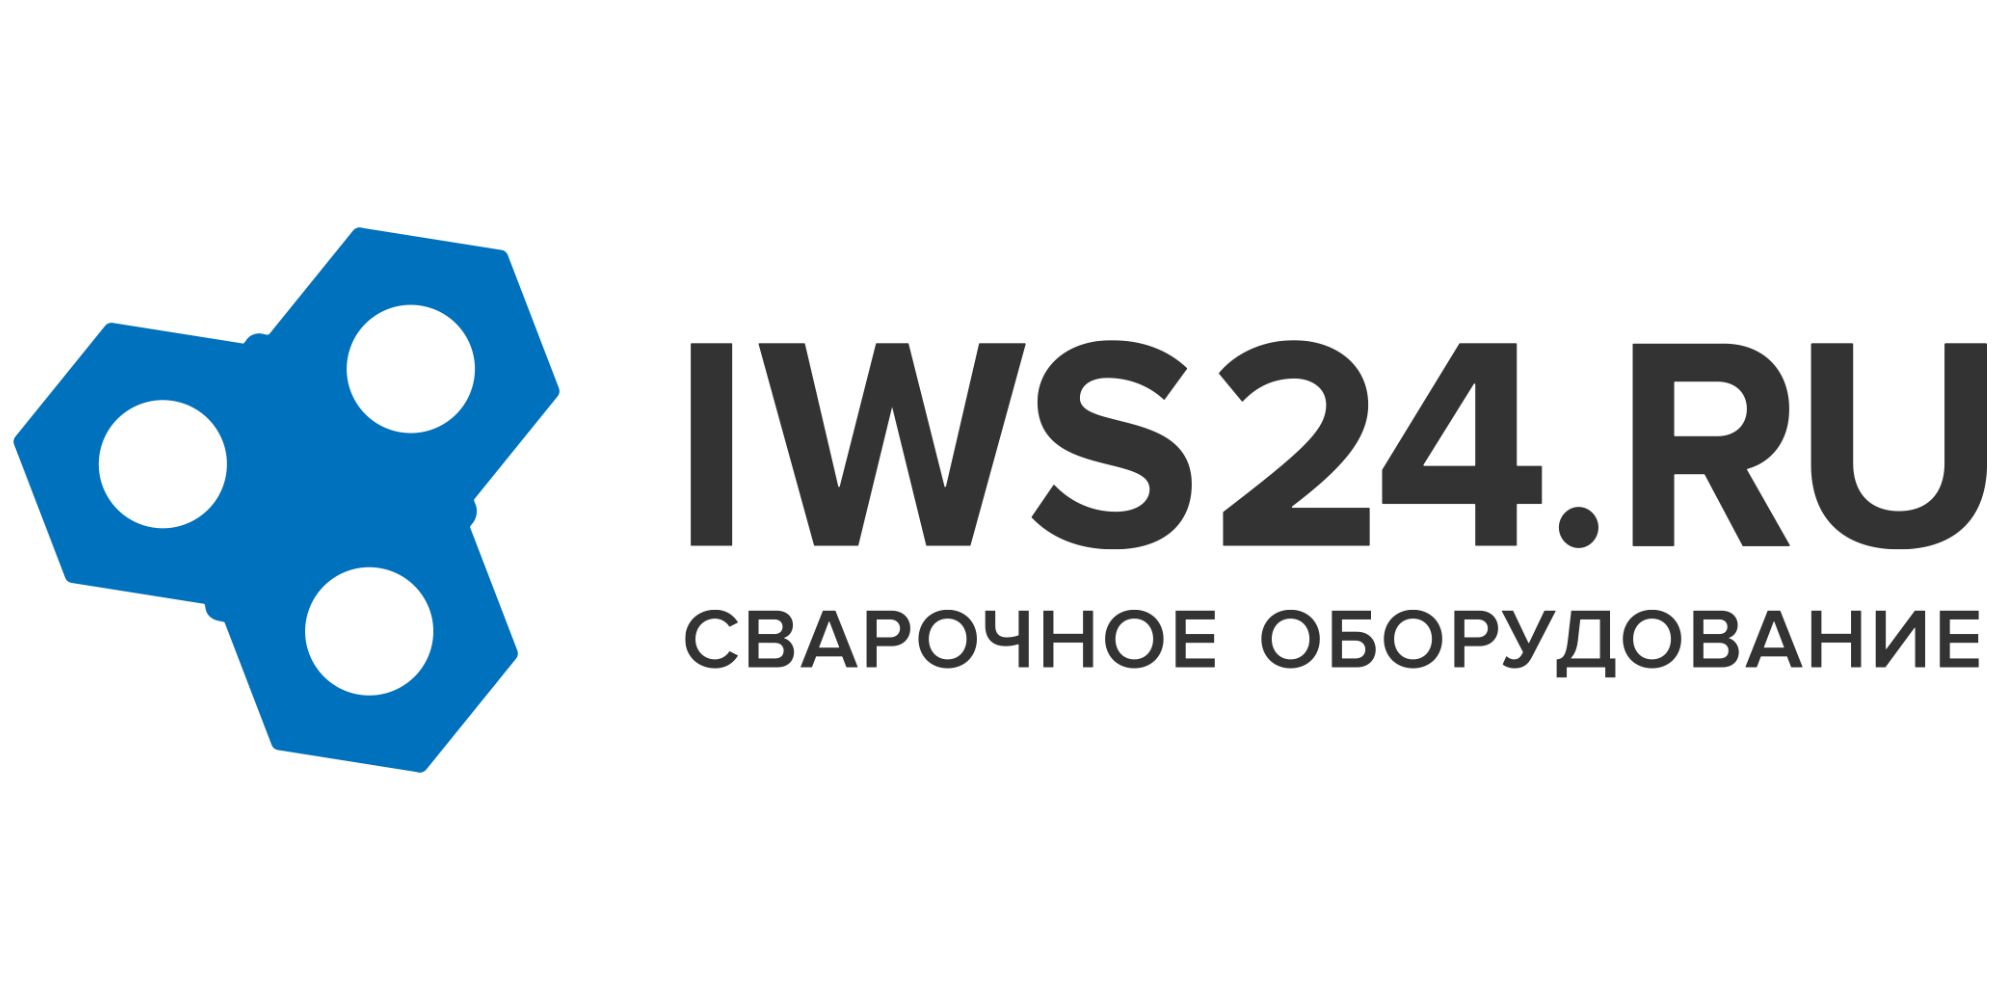 Тест 24 сварка. Логотип для магазина сварочного оборудования. Iws24 правый берег, Красноярск. IWS компания. Svargo логотип.